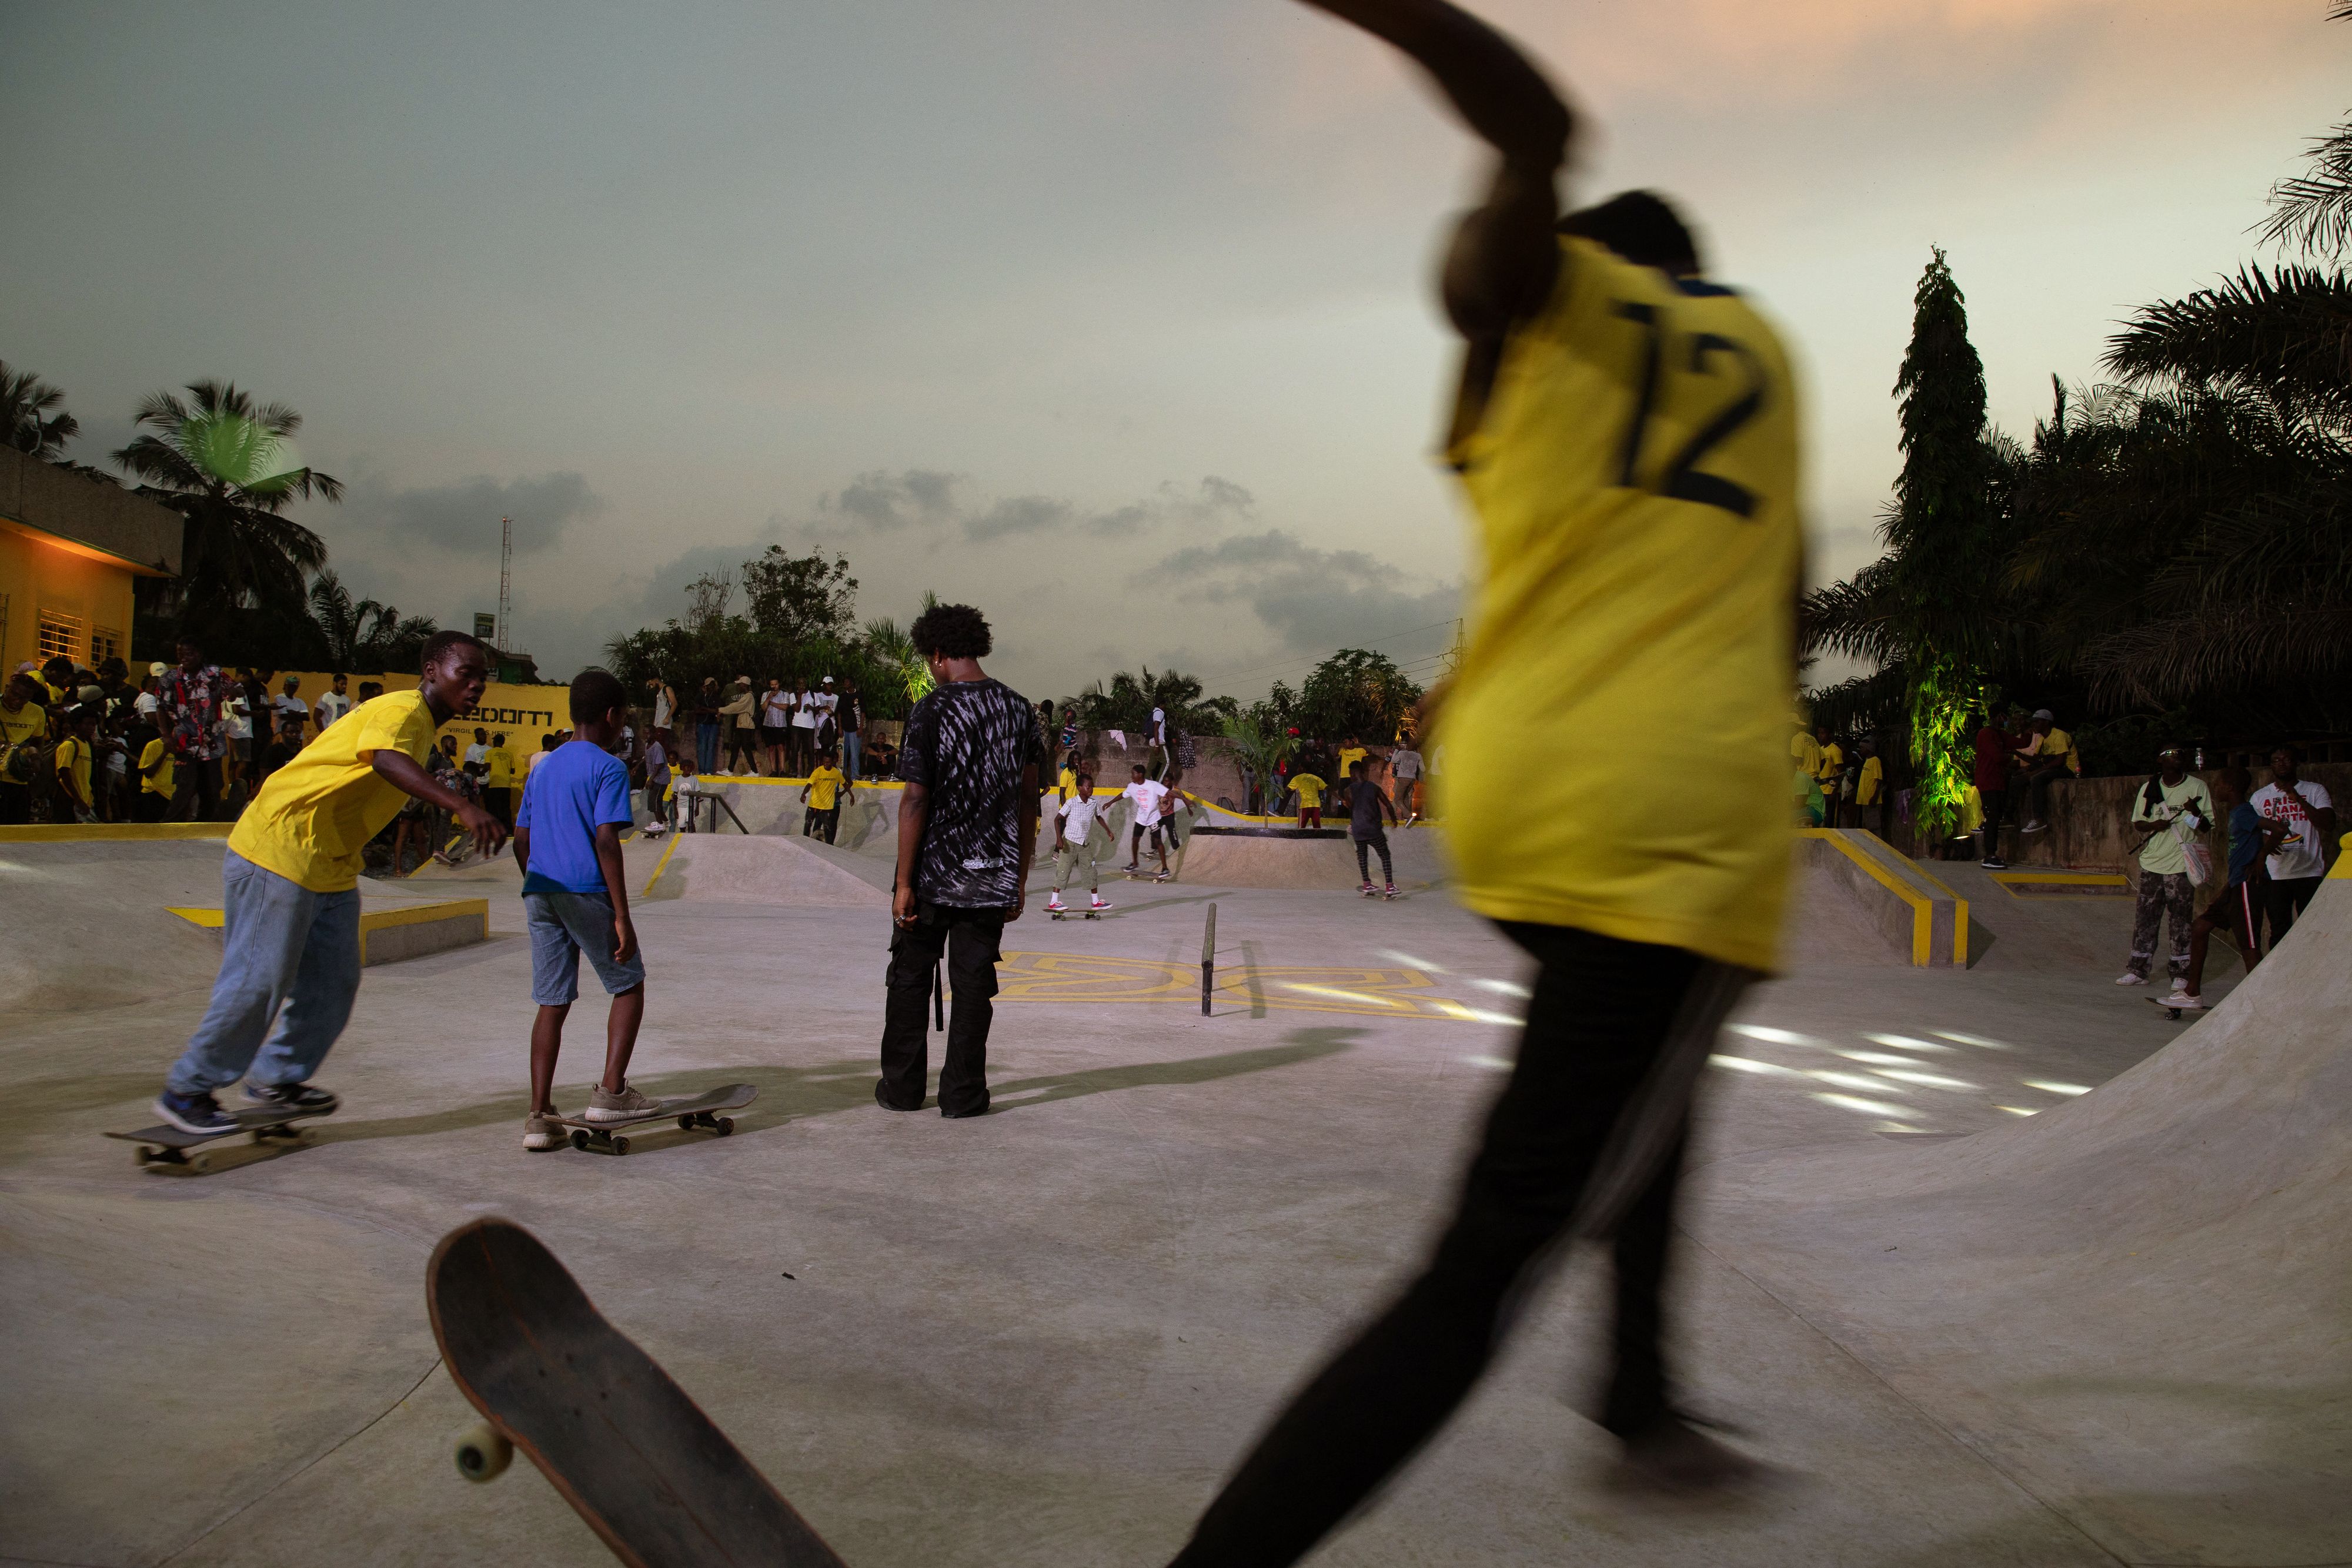 First Skatepark In Ghana Will Honor Virgil Abloh, News